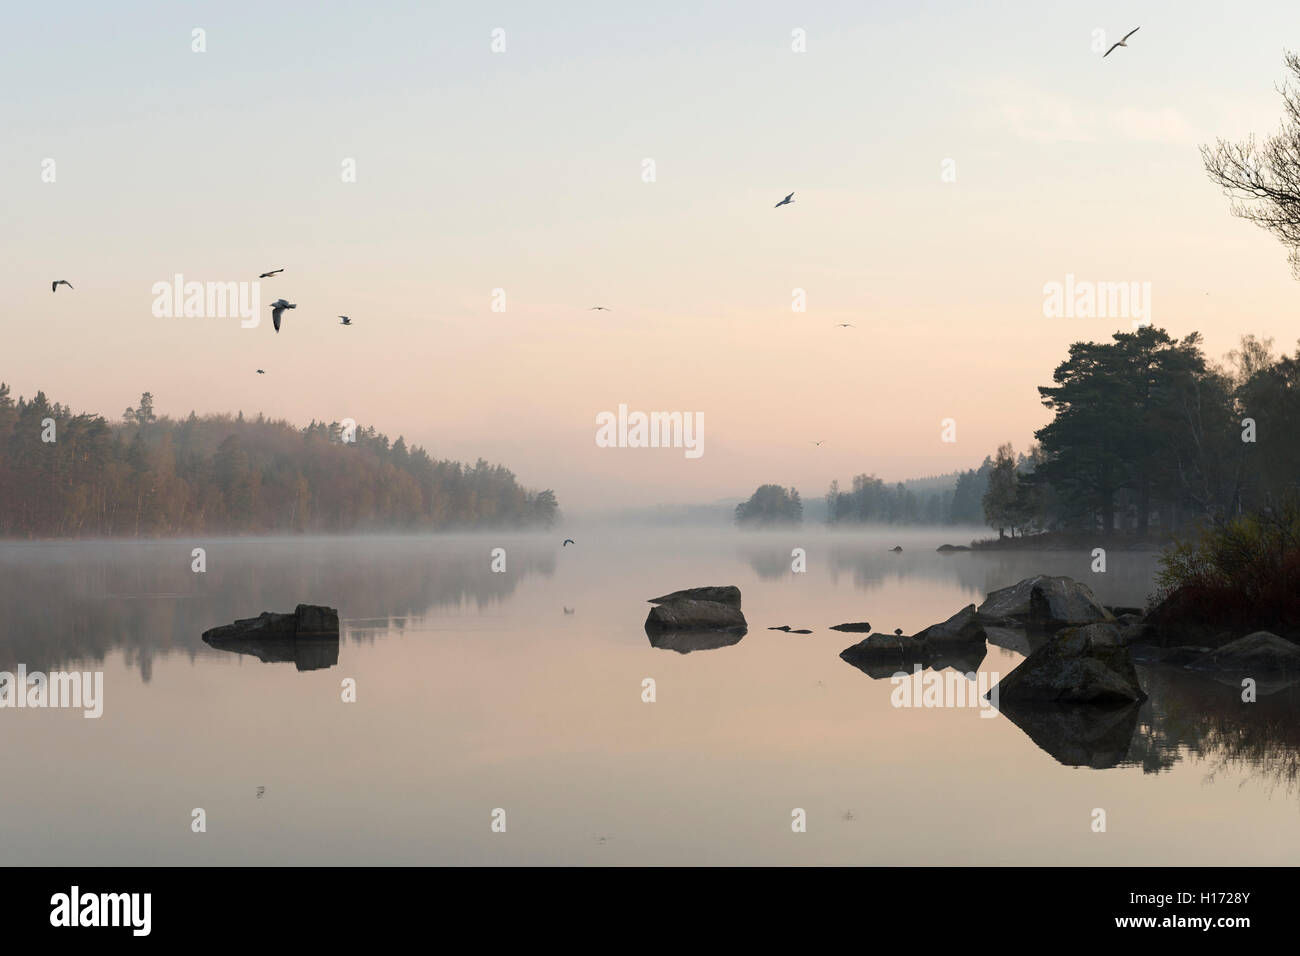 En Suecia lago natural rodeado de bosques de coníferas, temprano por la mañana el estado de ánimo, muy tranquila, la superficie de agua, gaviotas volando al amanecer. Foto de stock